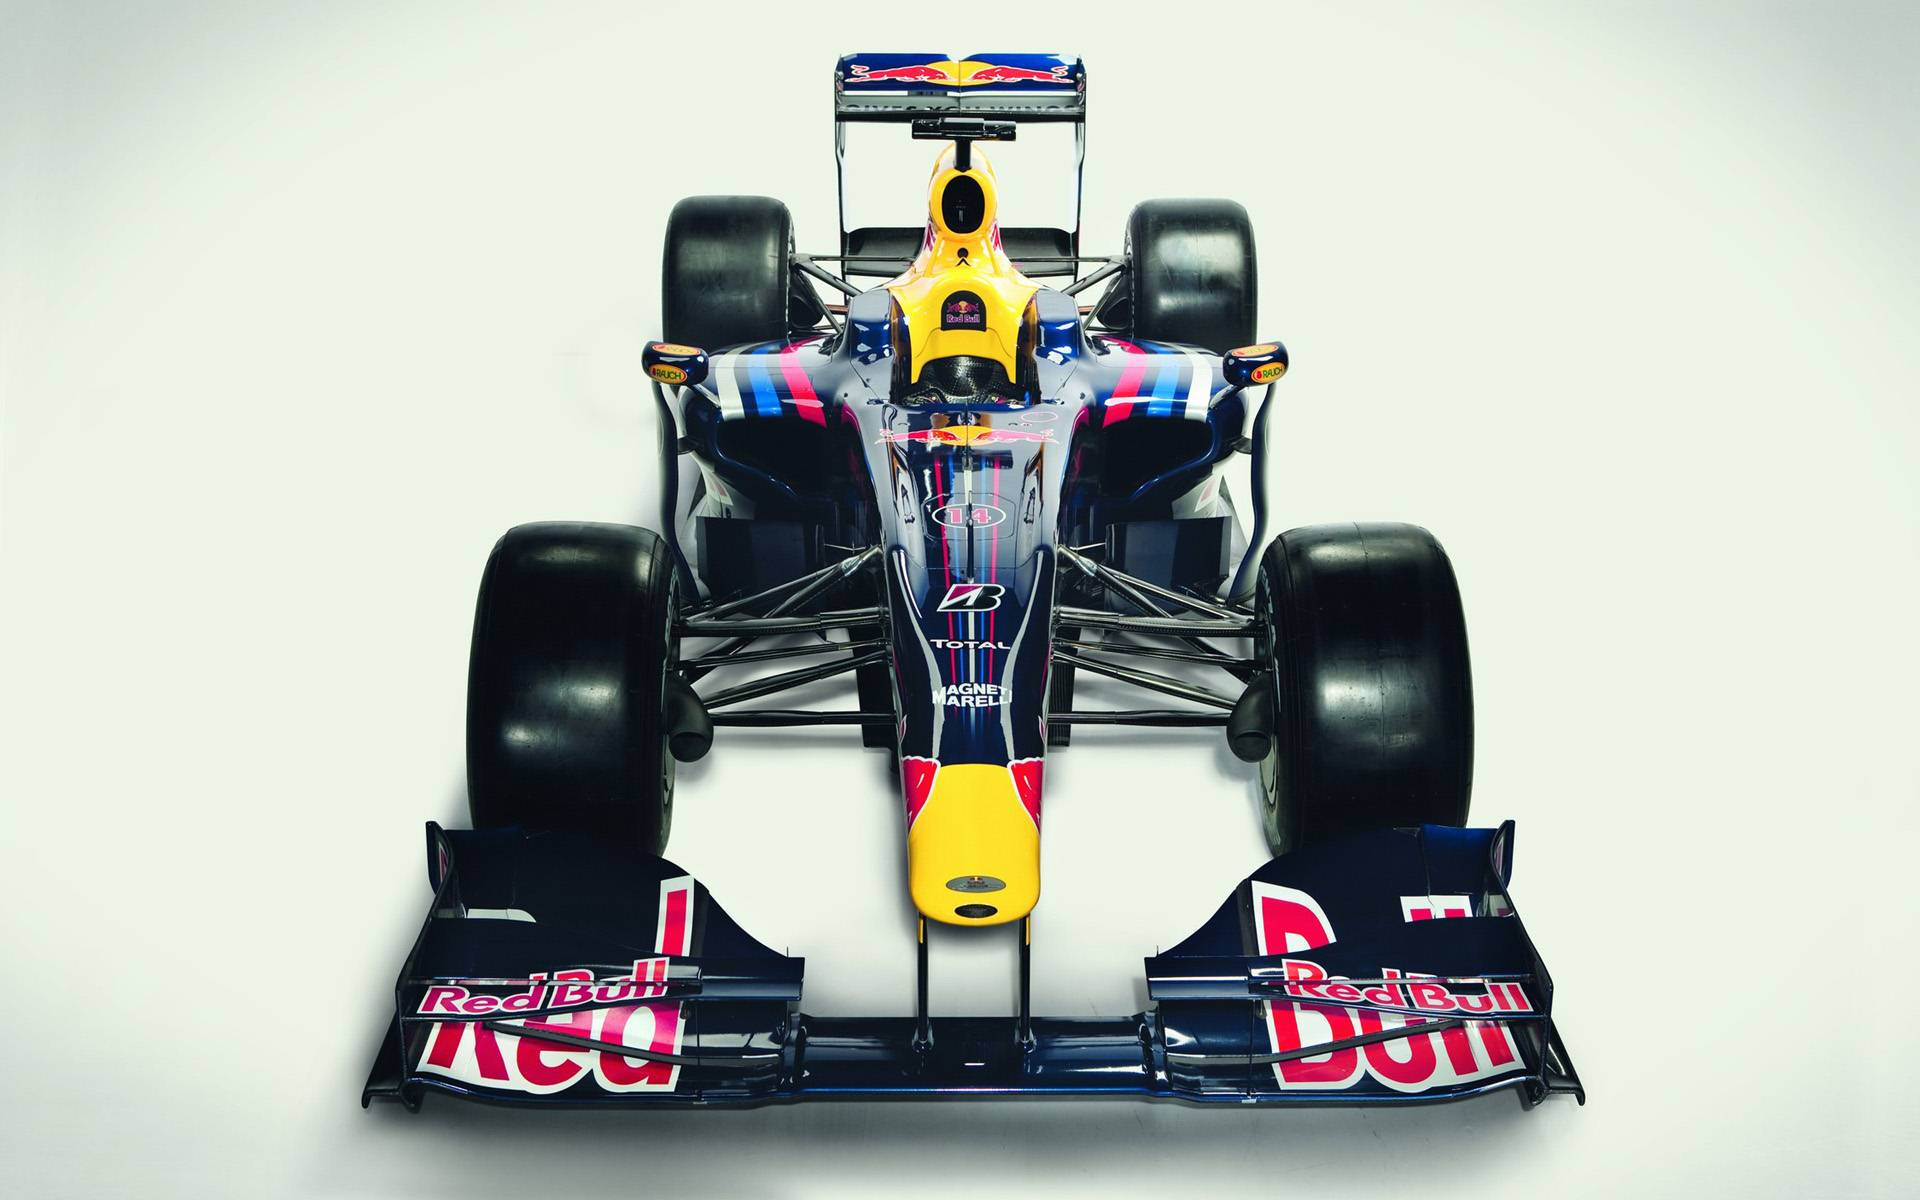 Red Bull RB5: Galerie de photos, informations complètes sur le modèle...